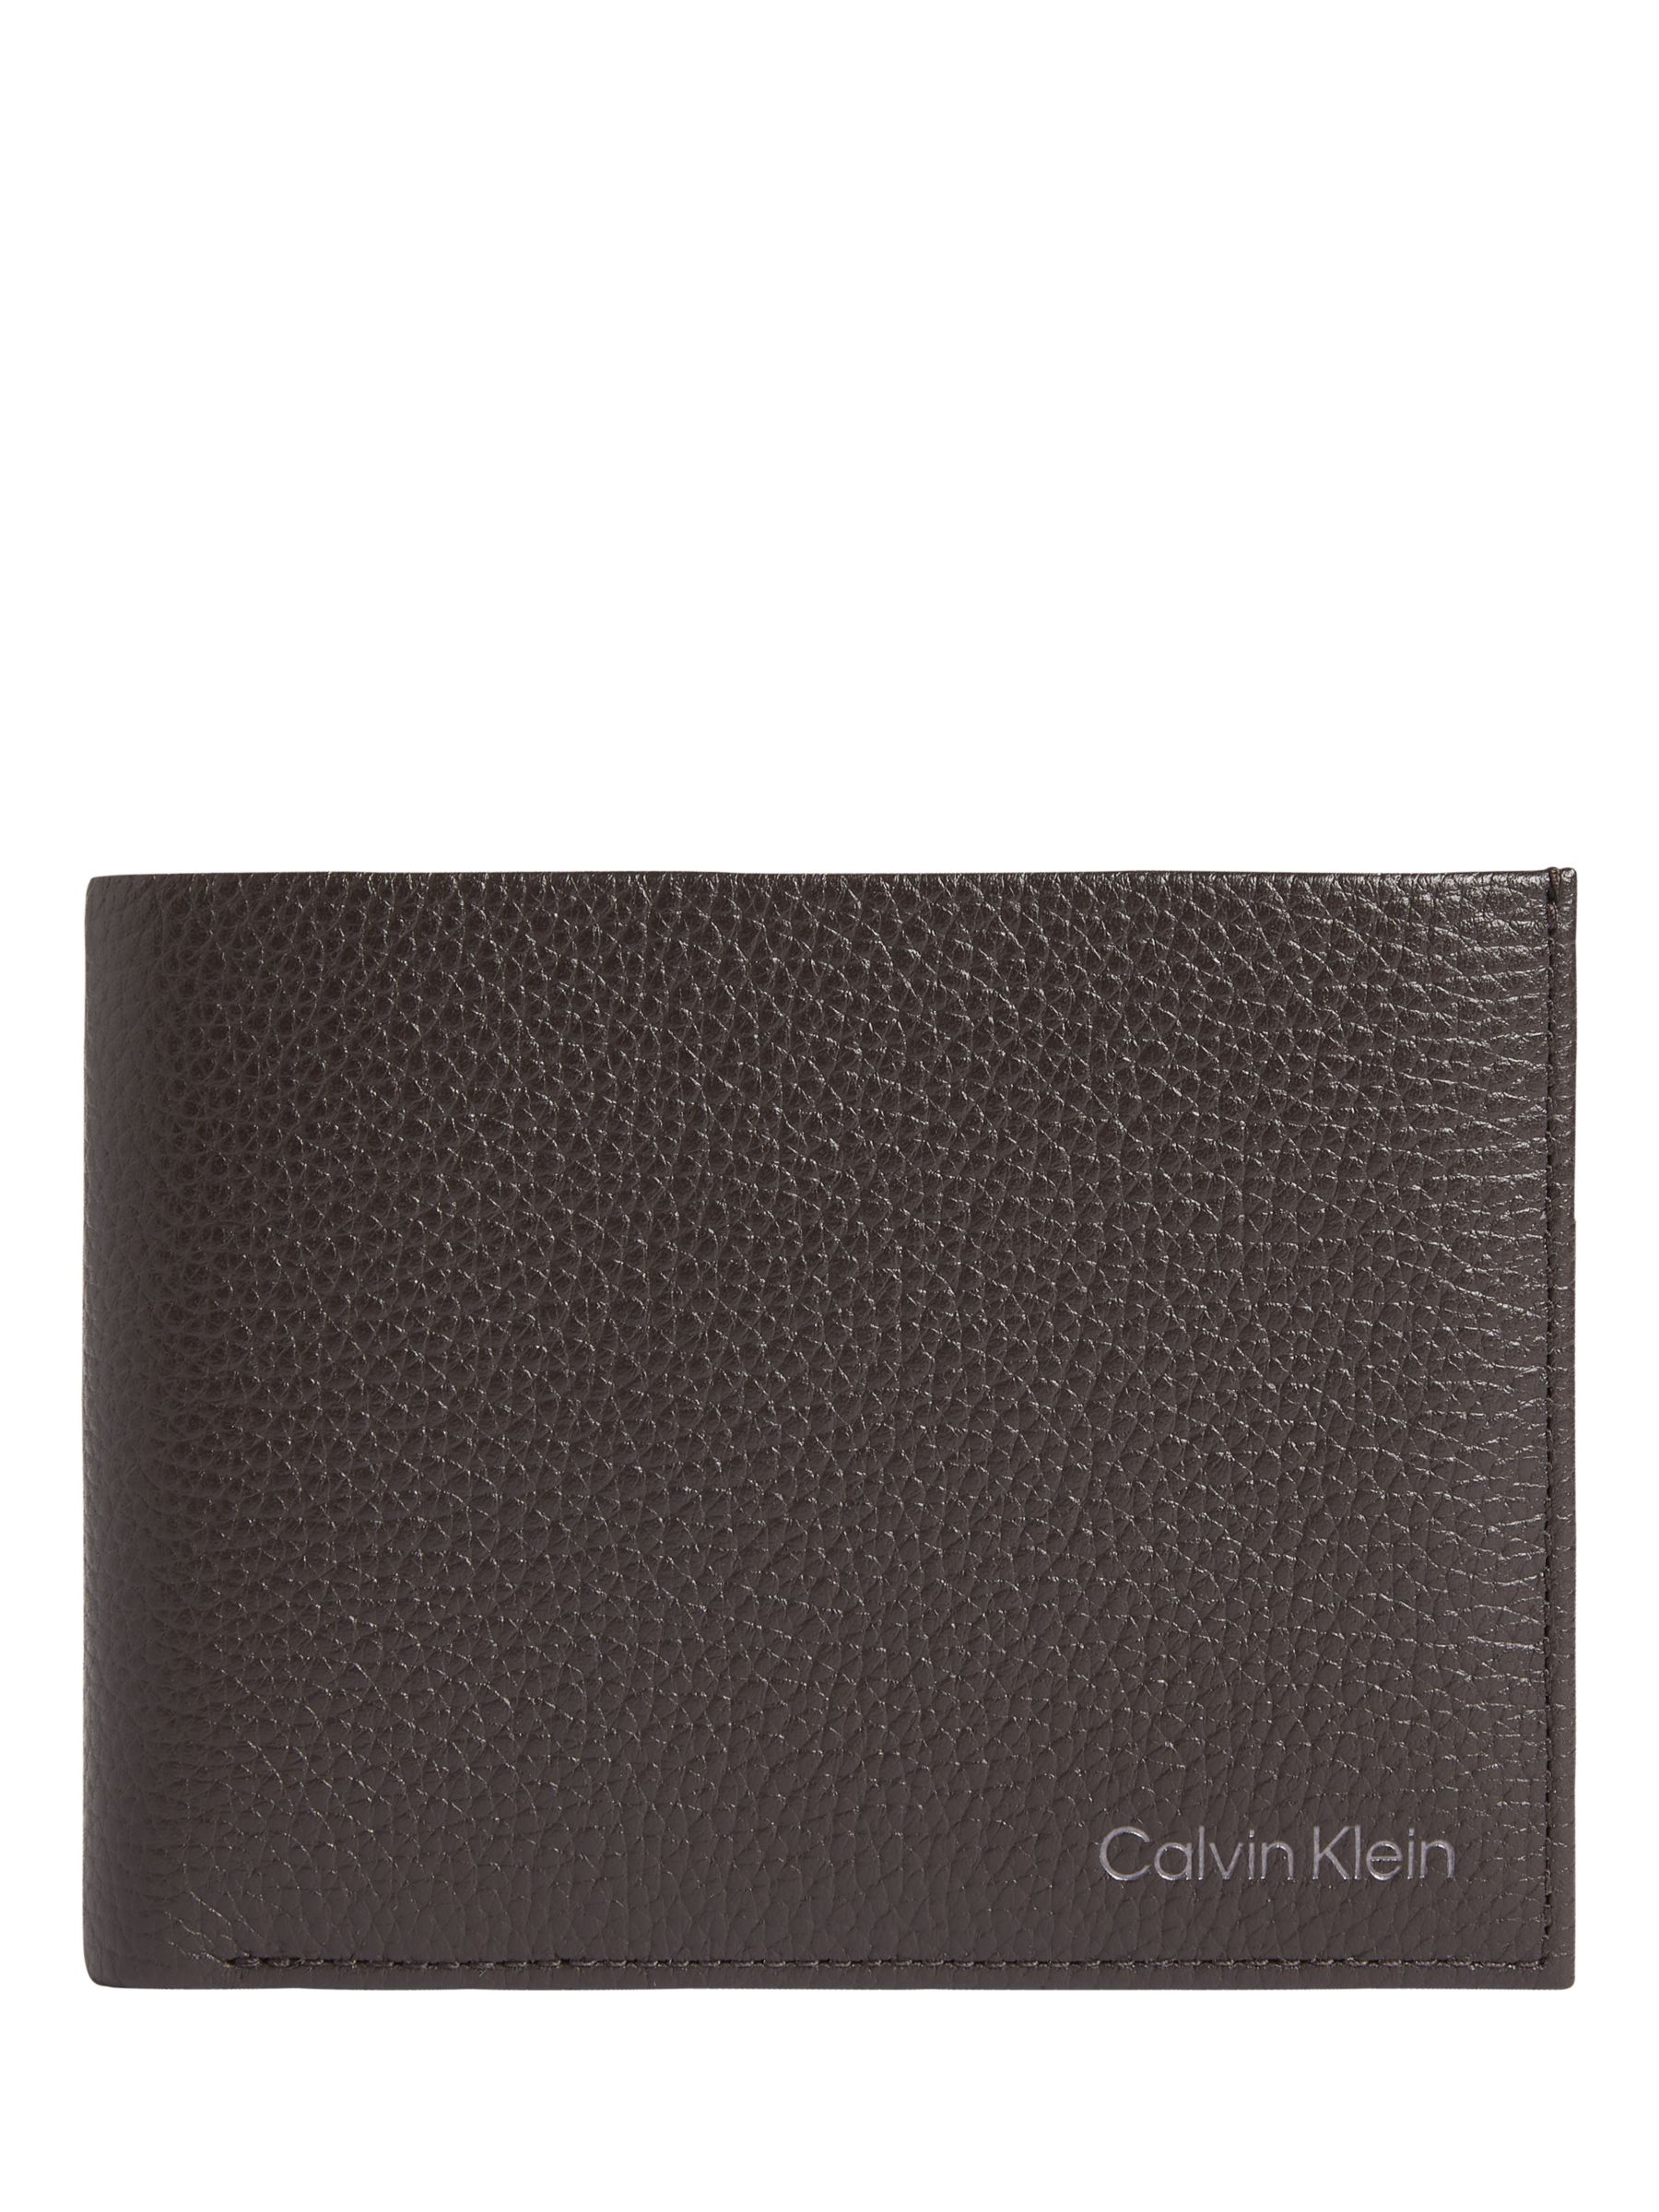 Calvin Klein Warmth Bifold Coin Wallet, Dark Brown, One Size